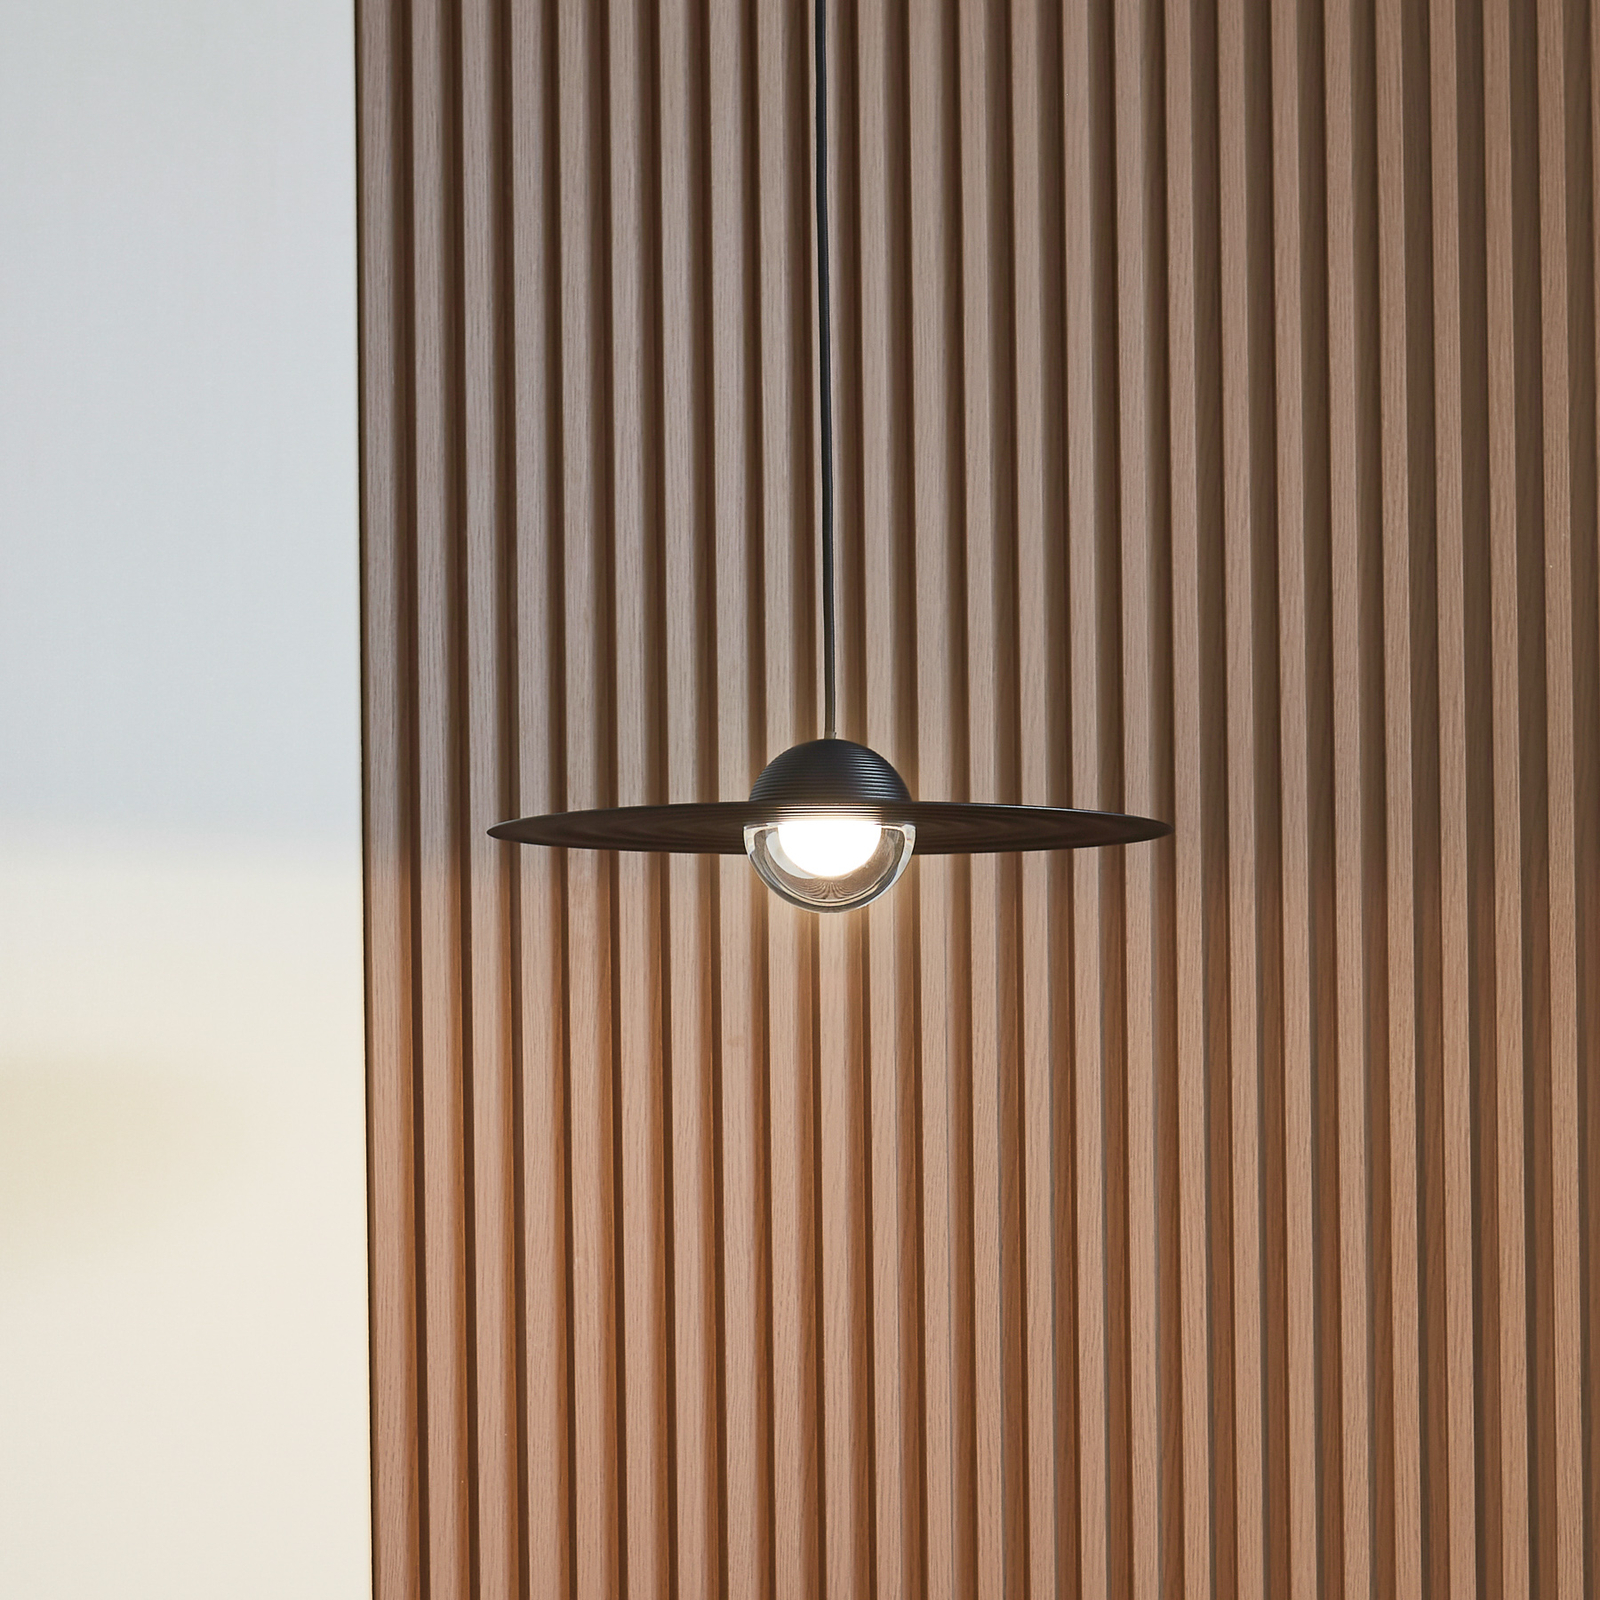 Lucande LED-Hängelampe Tethrion, schwarz, Aluminium, Ø 40 cm